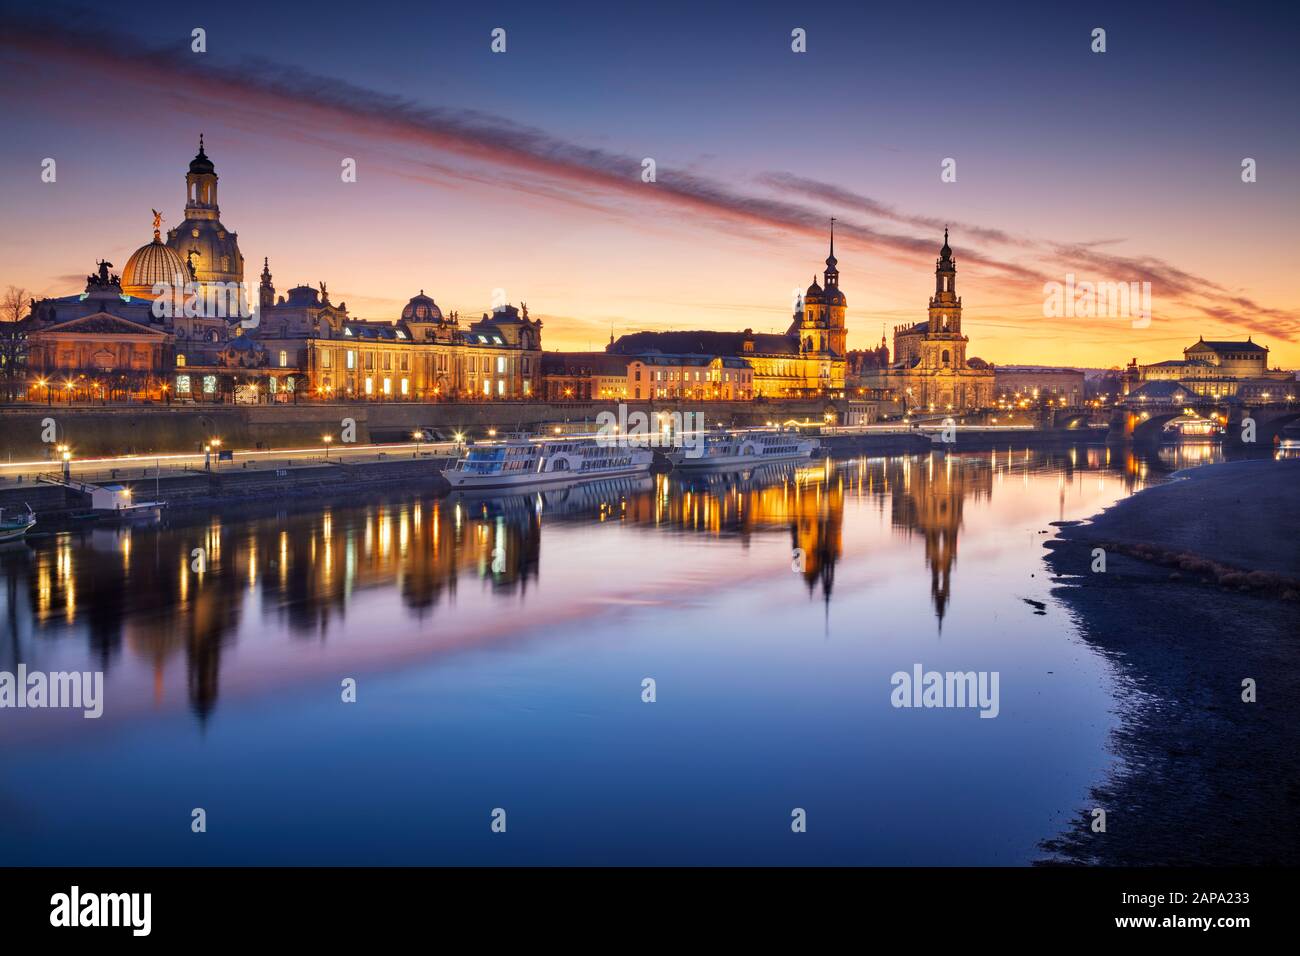 Dresde, Alemania. Imagen de Dresde, Alemania, con la Frauenkirche de Dresde y la catedral de Dresde durante la hermosa puesta de sol. Foto de stock